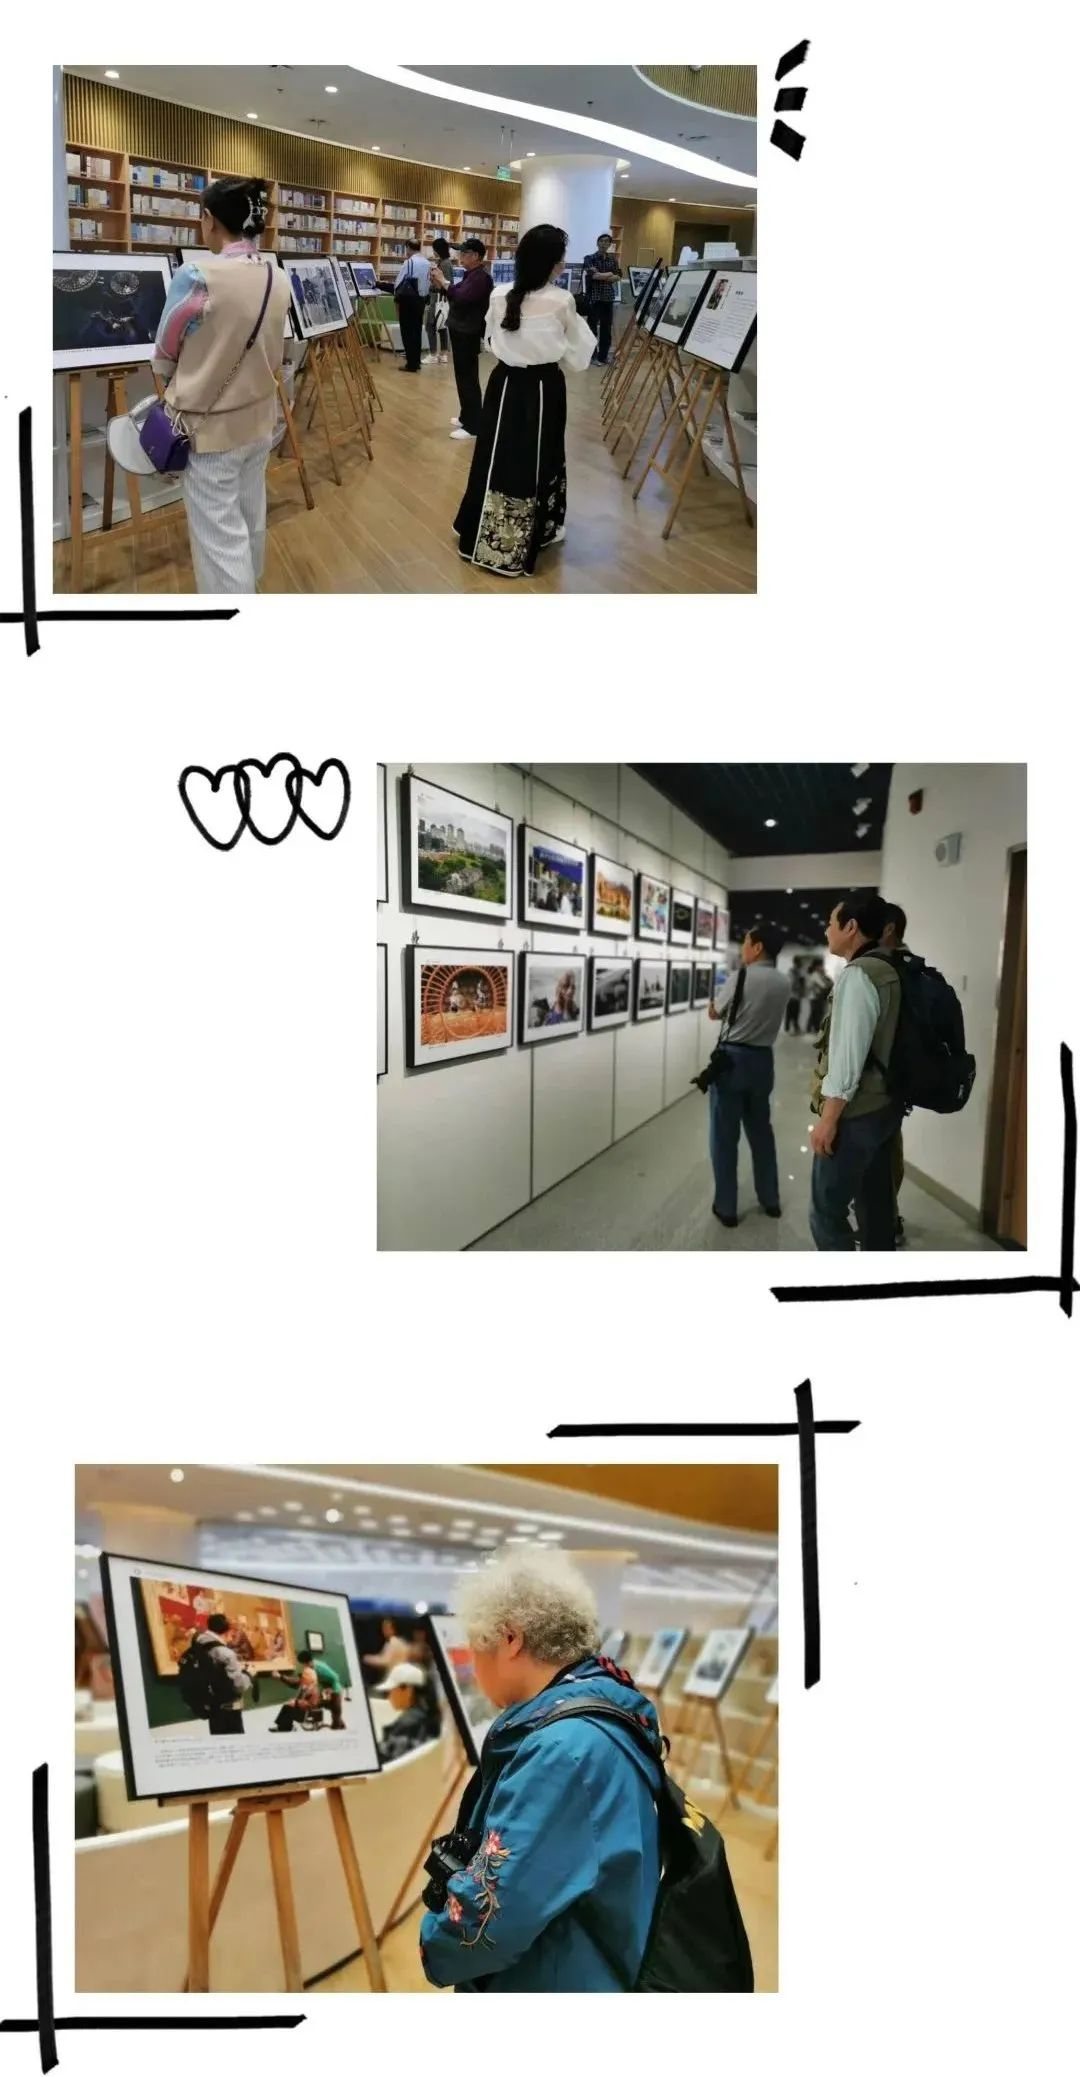 第三届中国老摄影家协会摄影展在襄阳市图书馆开幕